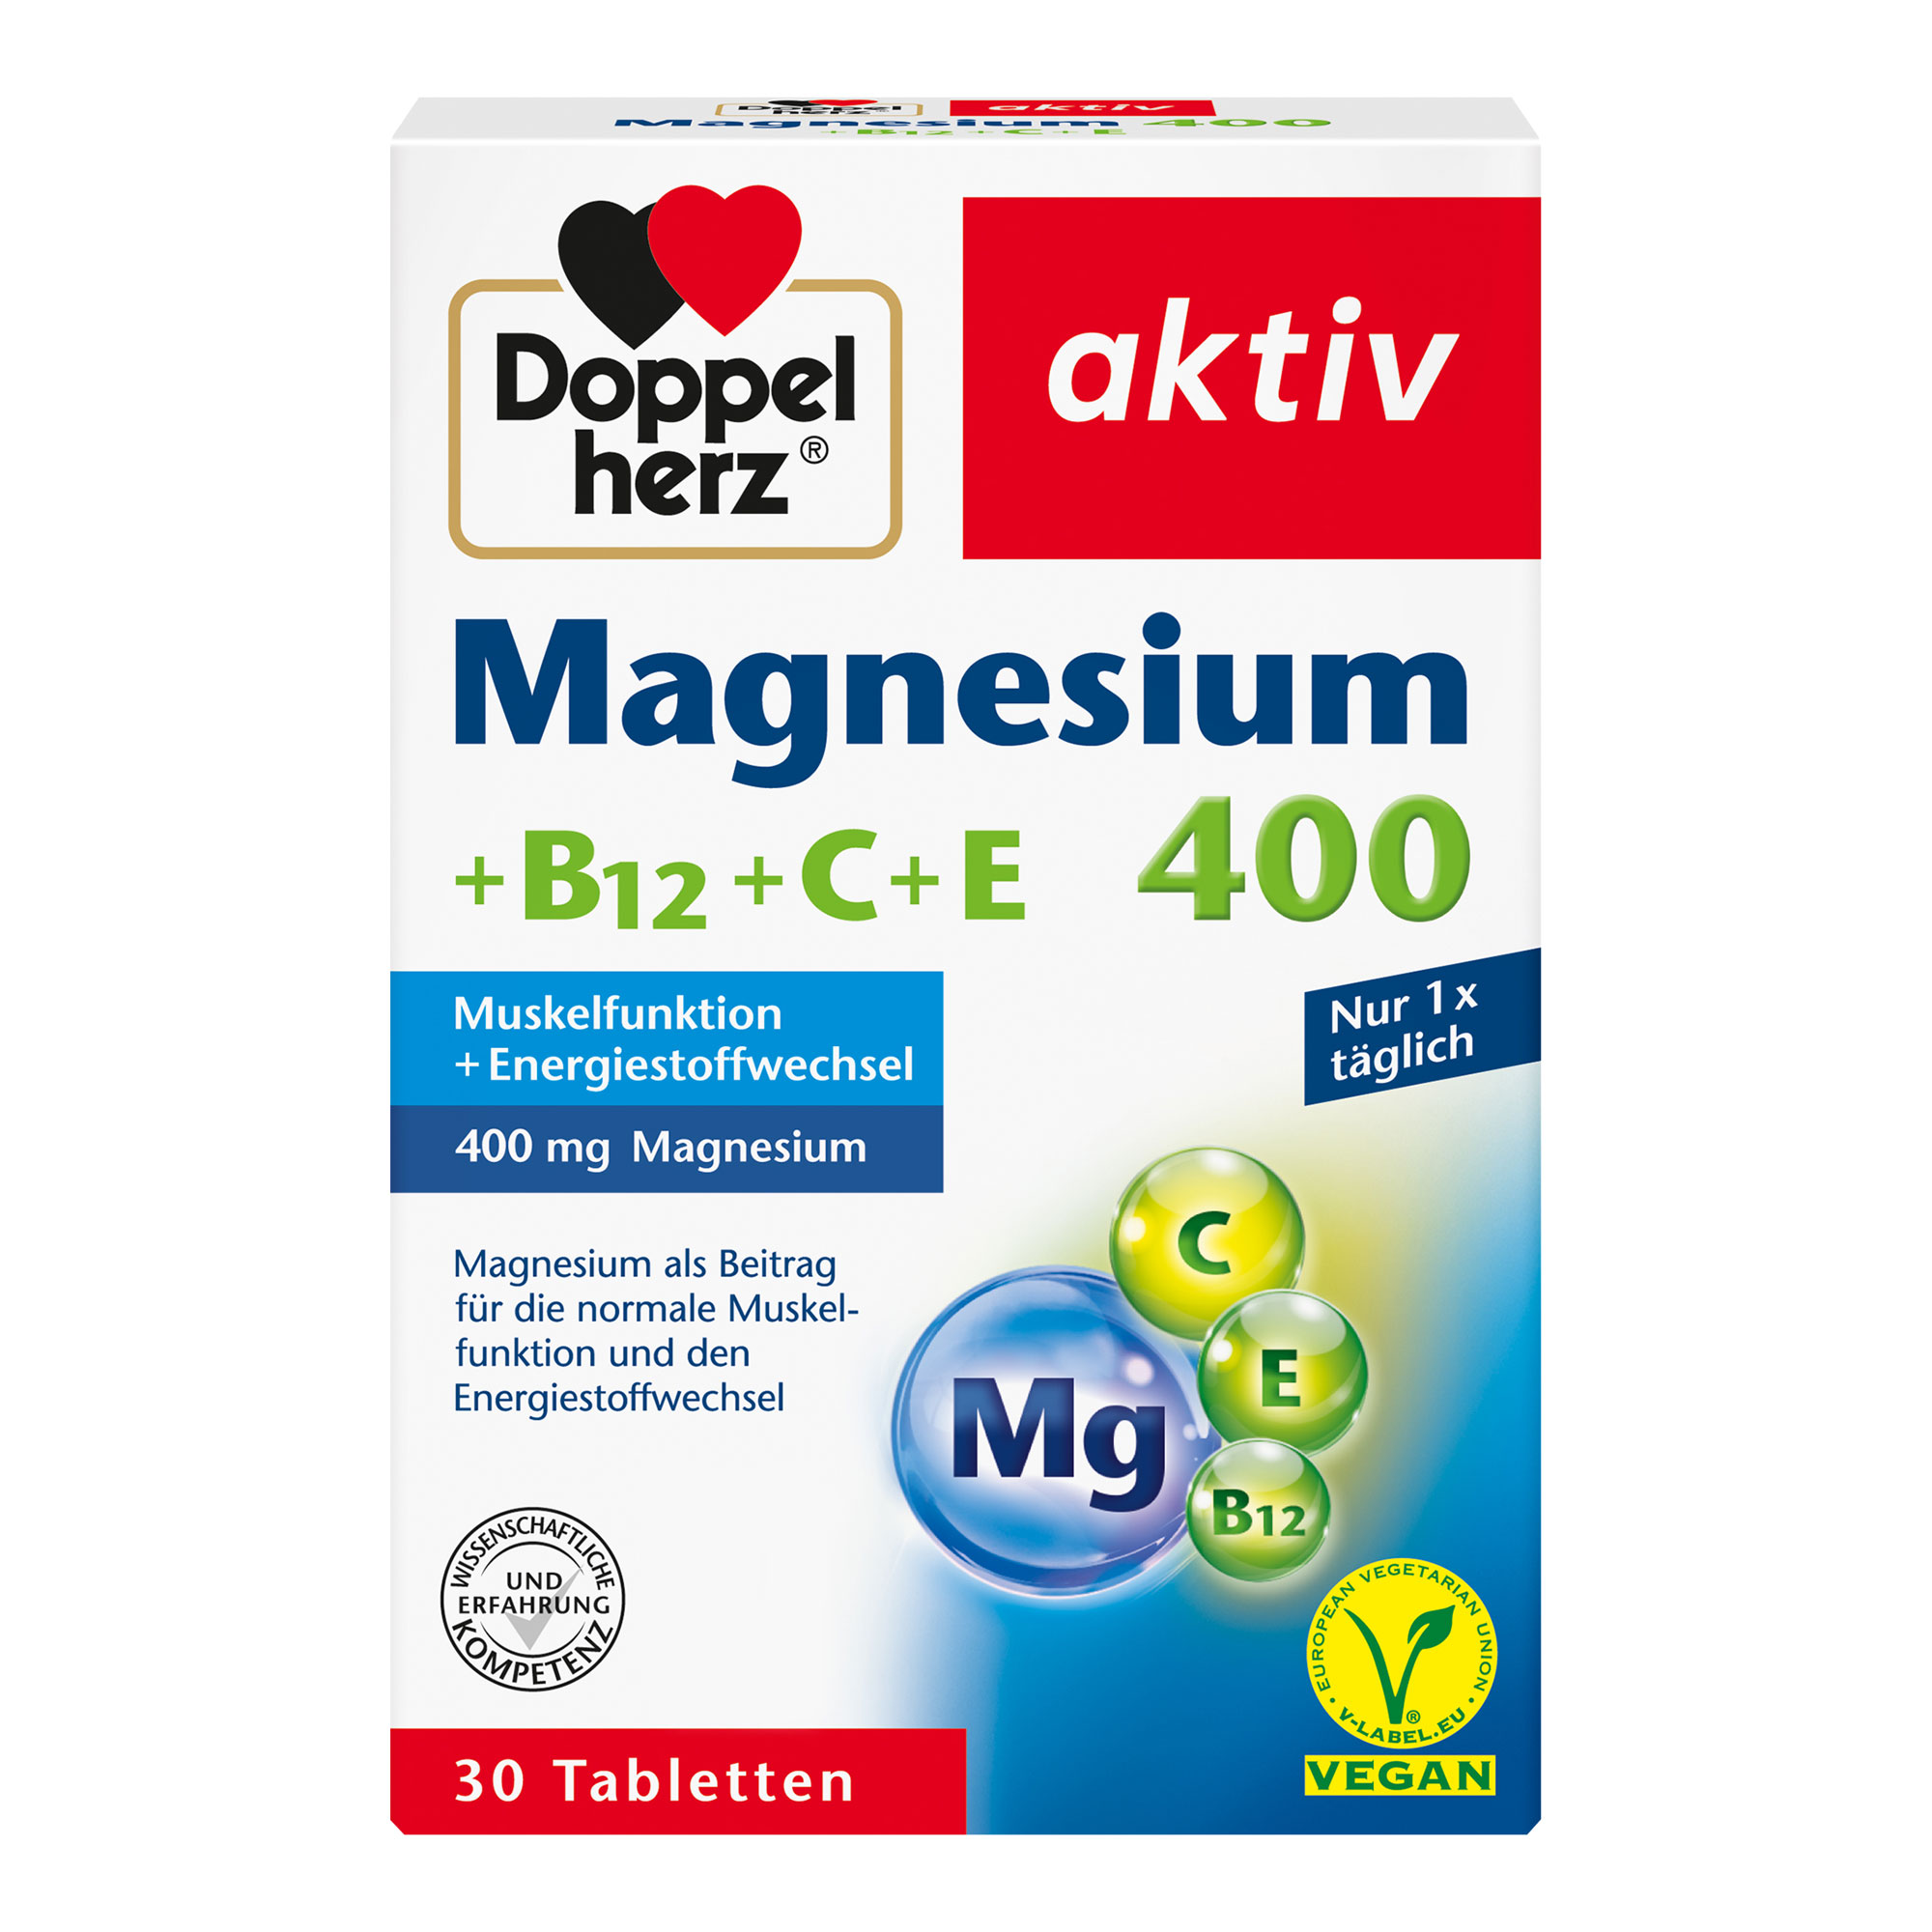 Nahrungsergänzungsmittel mit Magnesium, Vitamin C, E und B12.